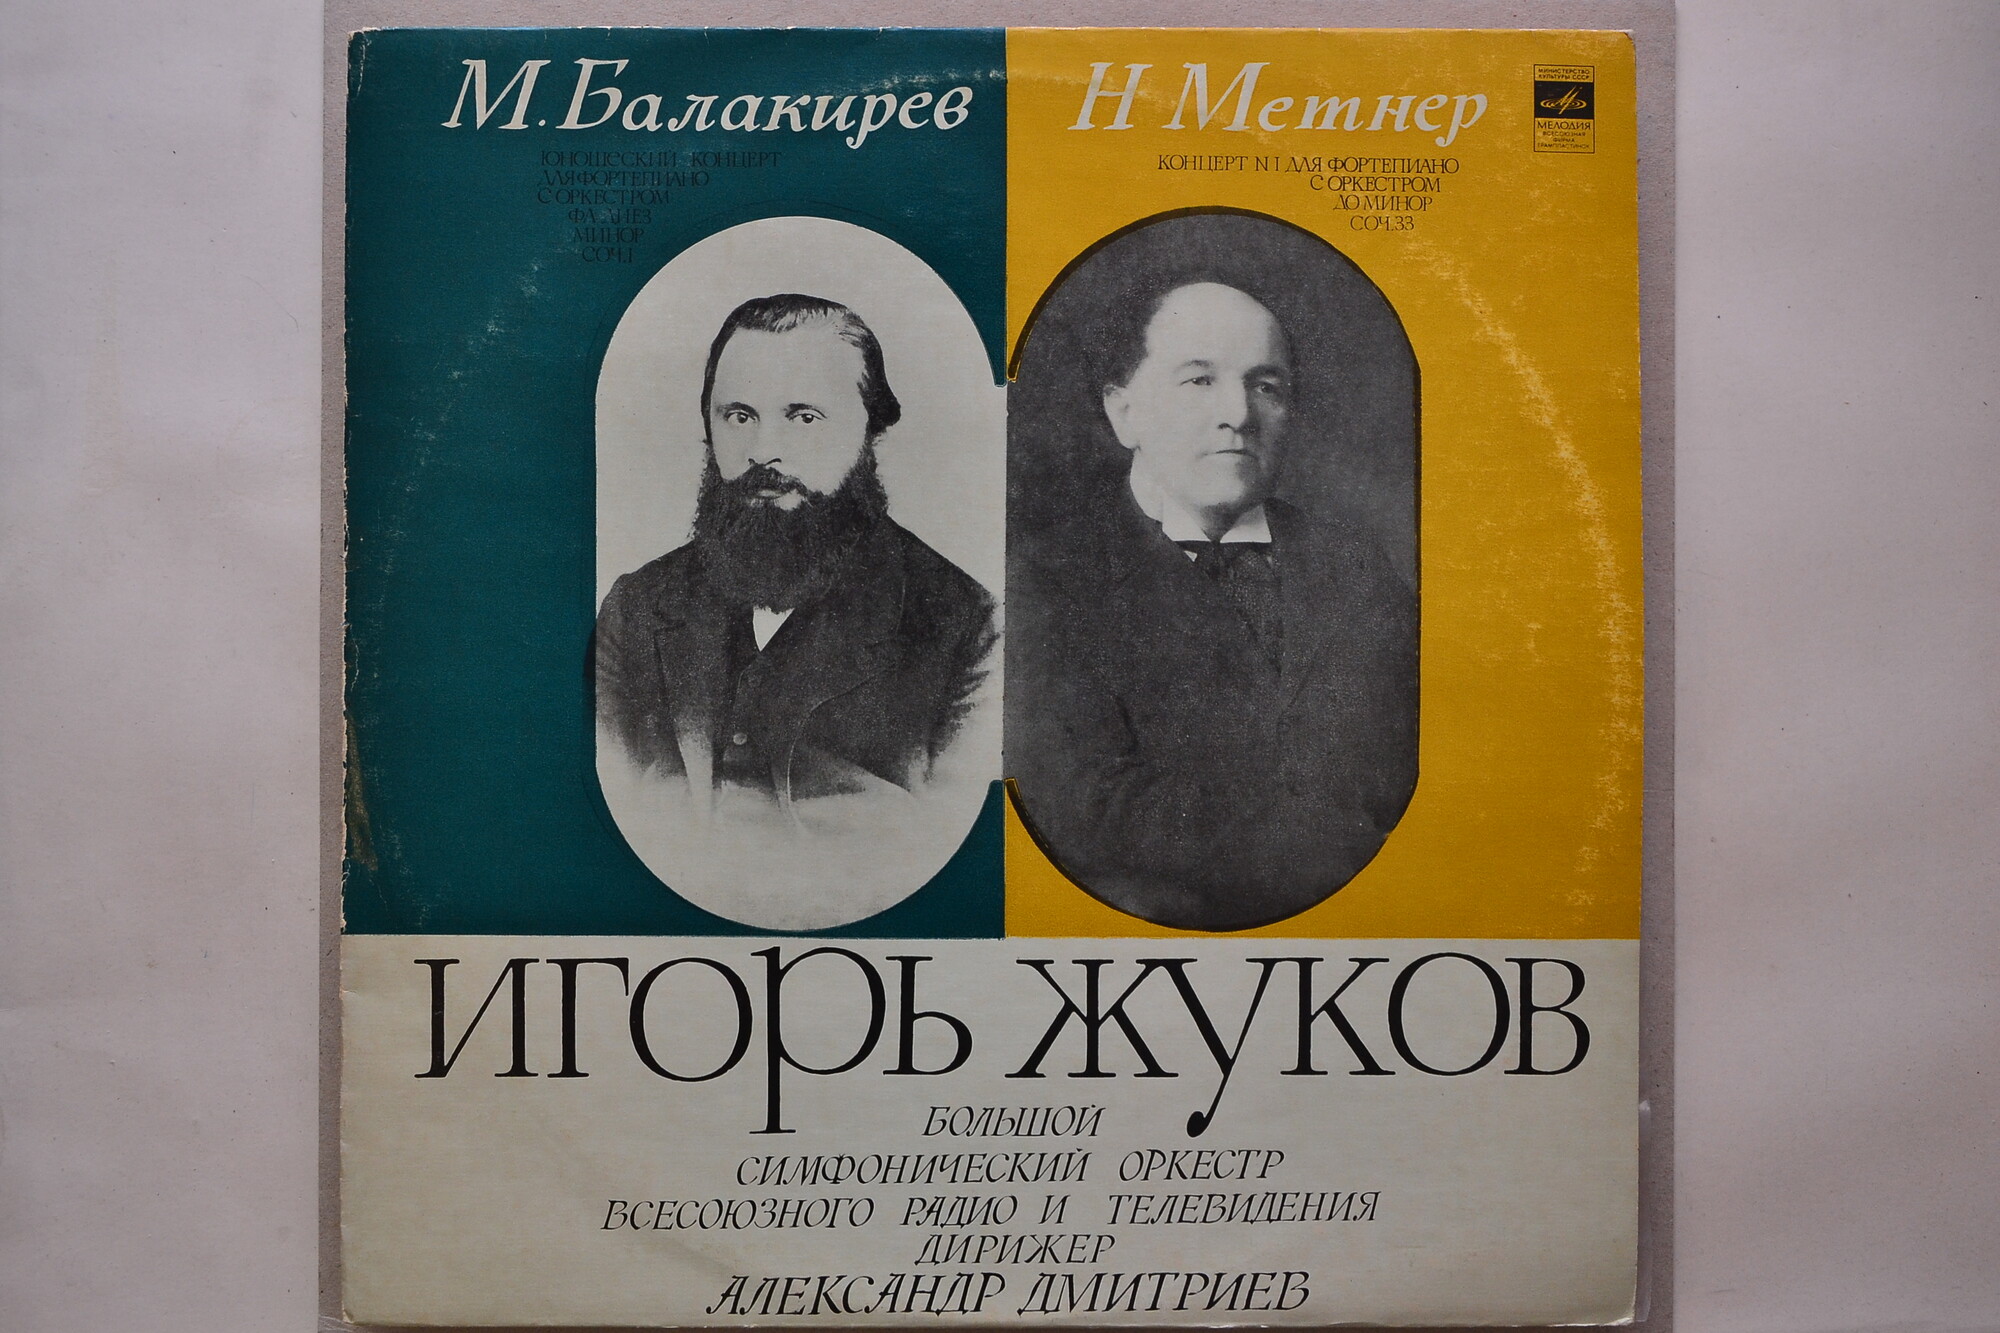 М. Балакирев, Н. Метнер: Концерты для ф-но с оркестром (Игорь Жуков)